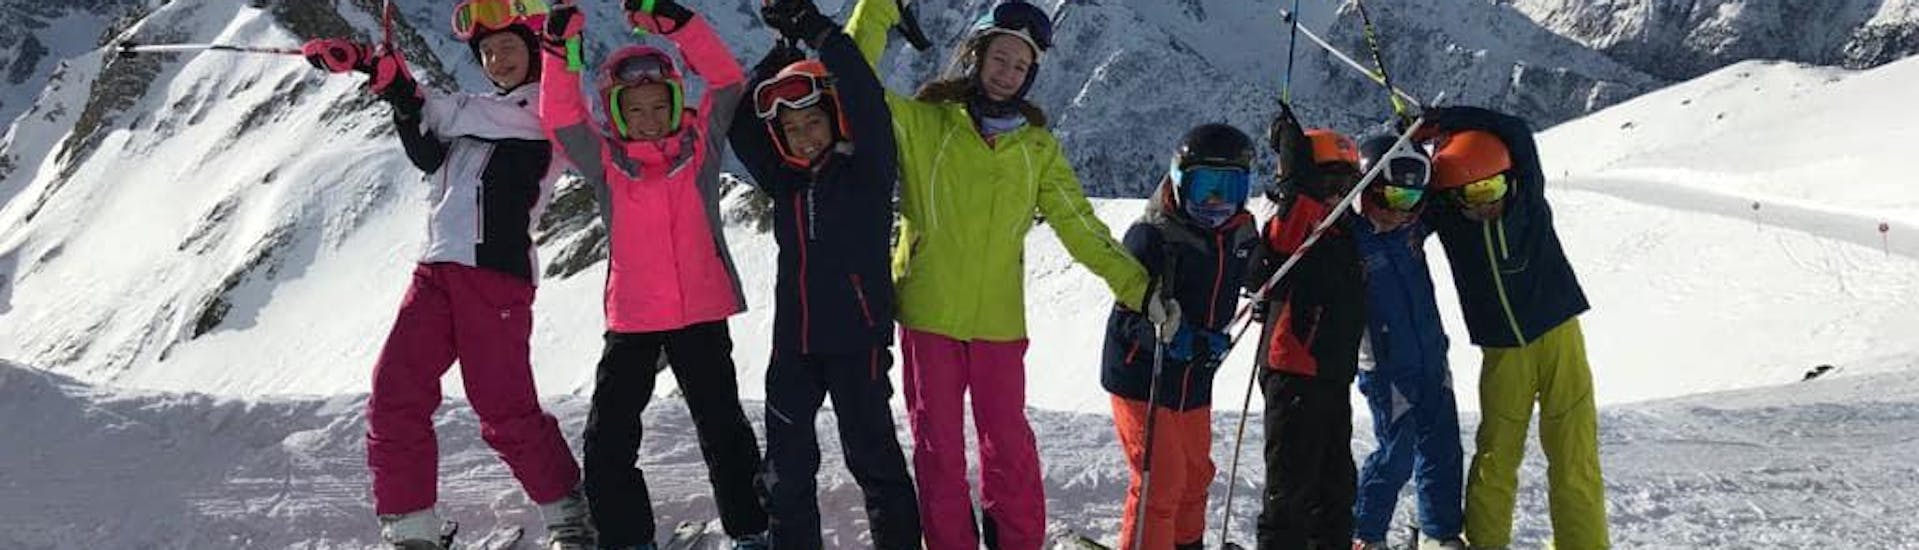 Des participants heureux à Pontedilegno pendant l'un des cours de ski pour enfants pour débutants.